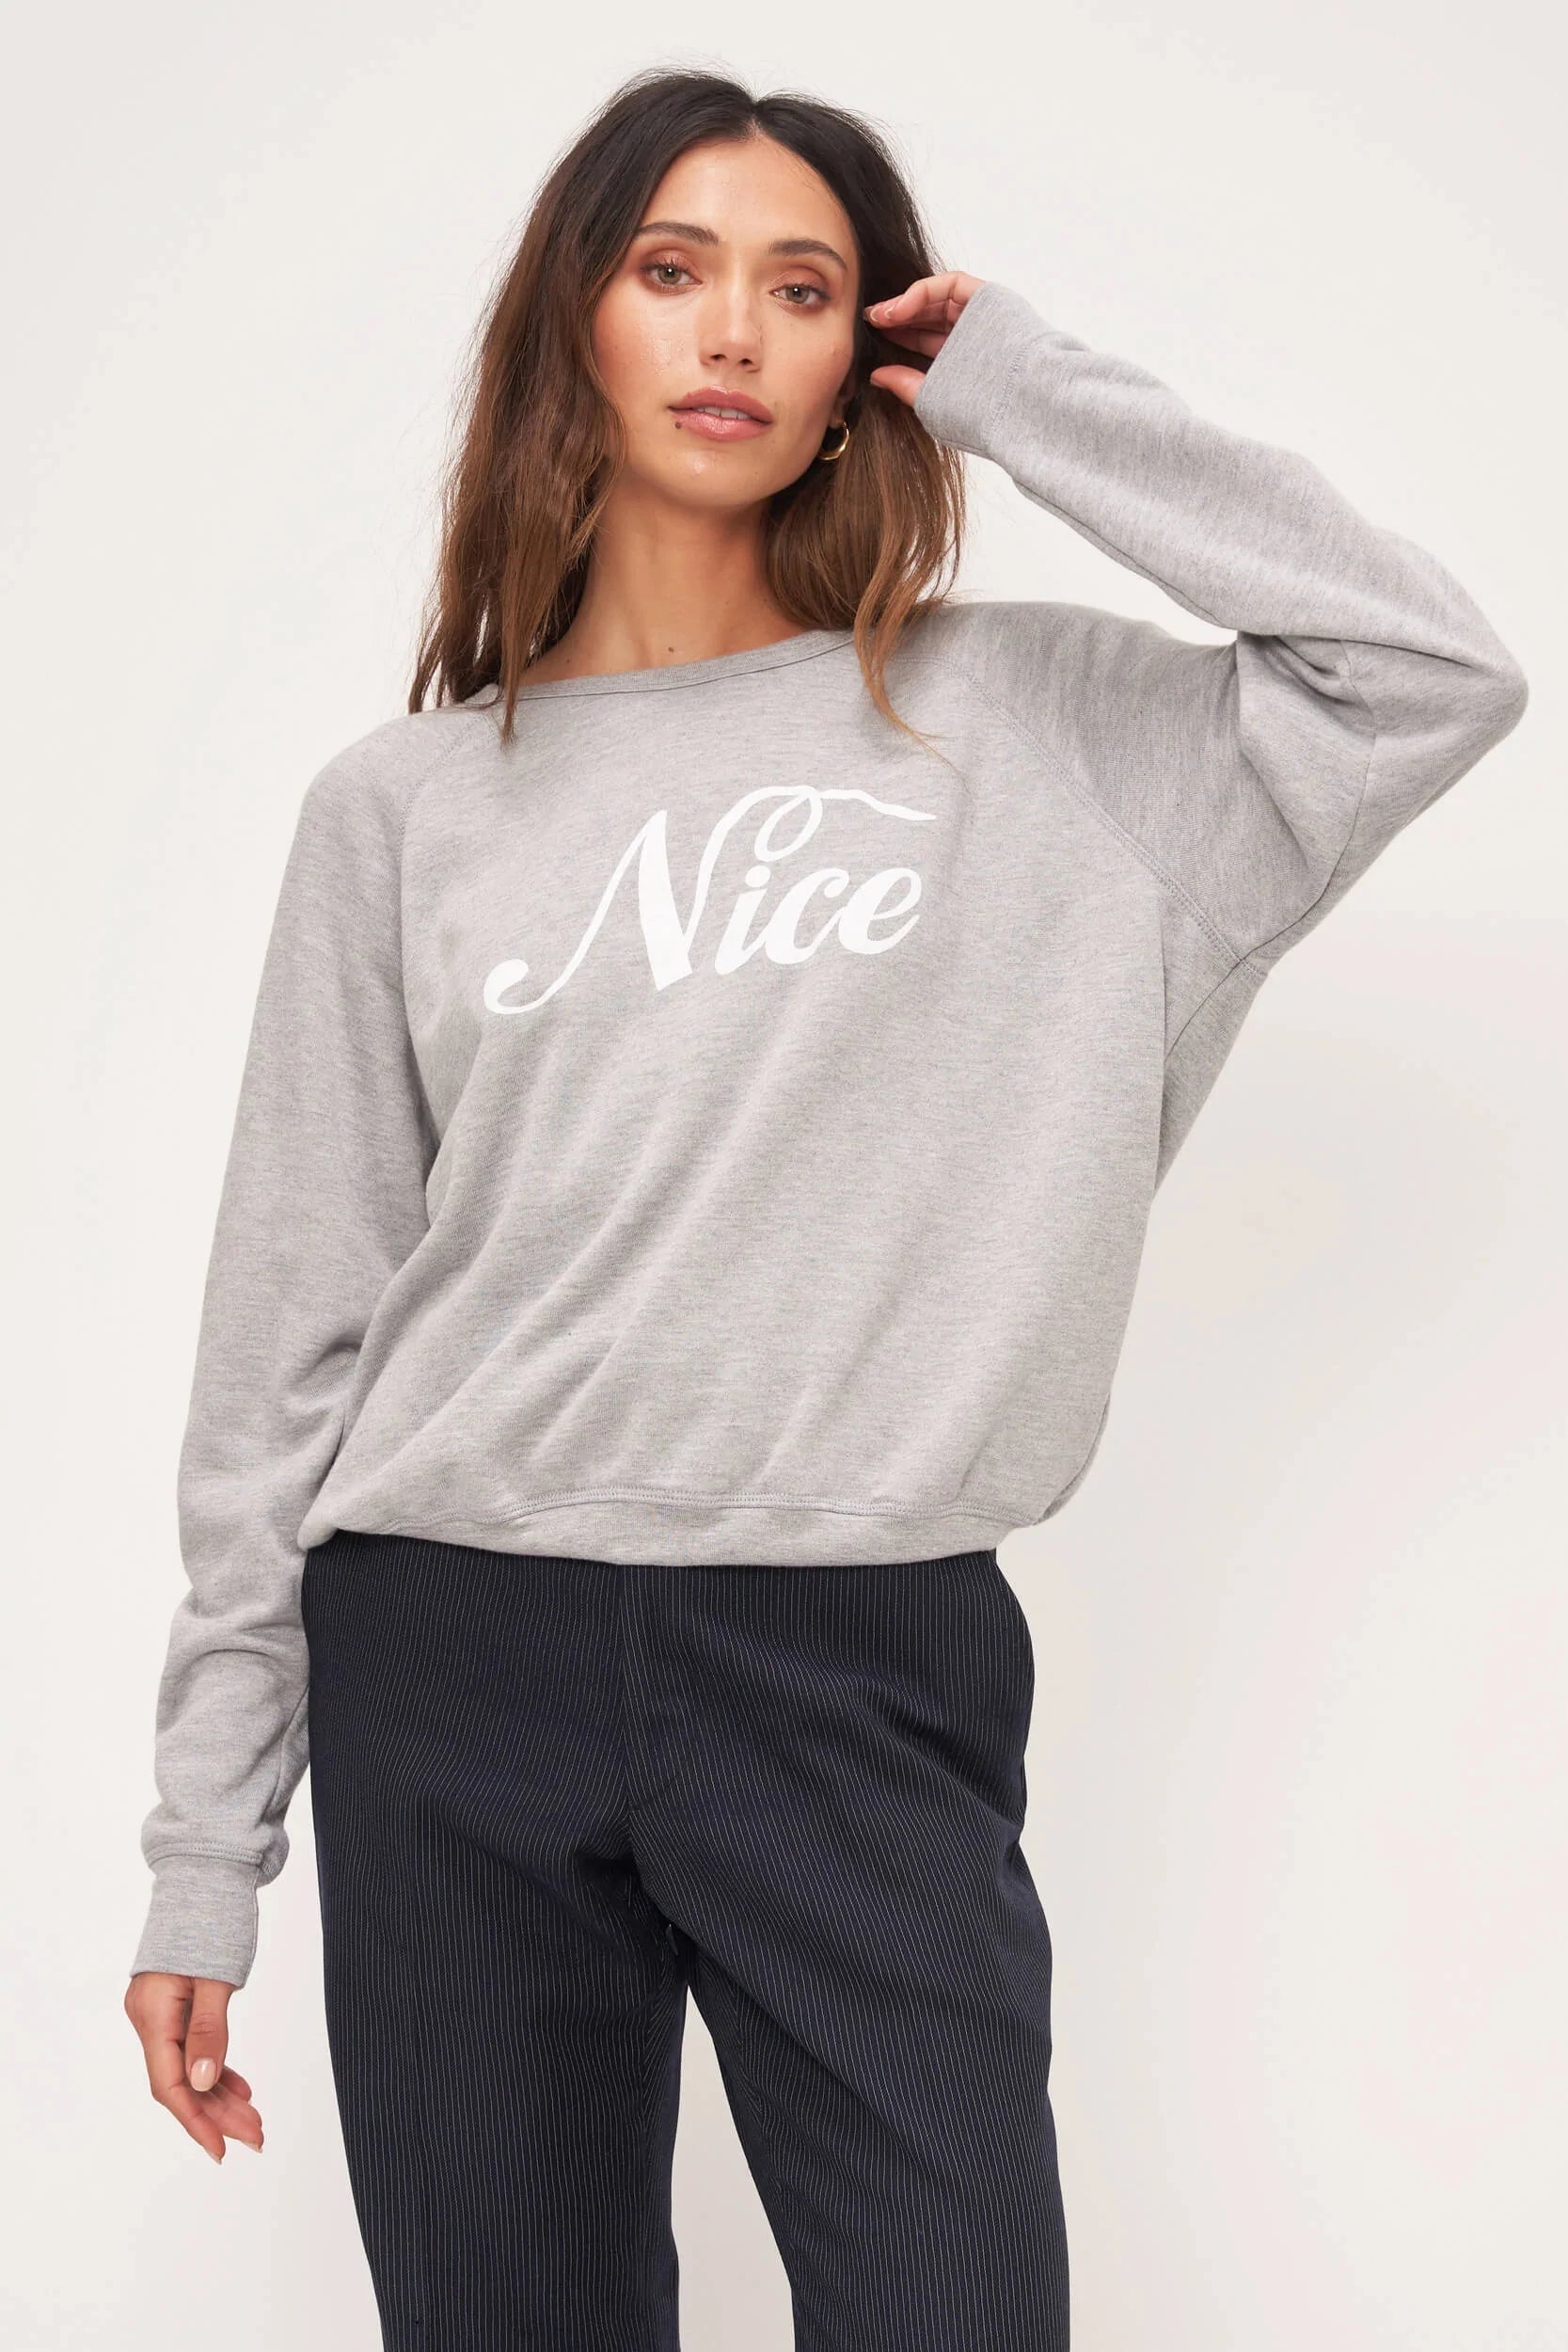 Naughty/Nice Reversible Sweatshirt